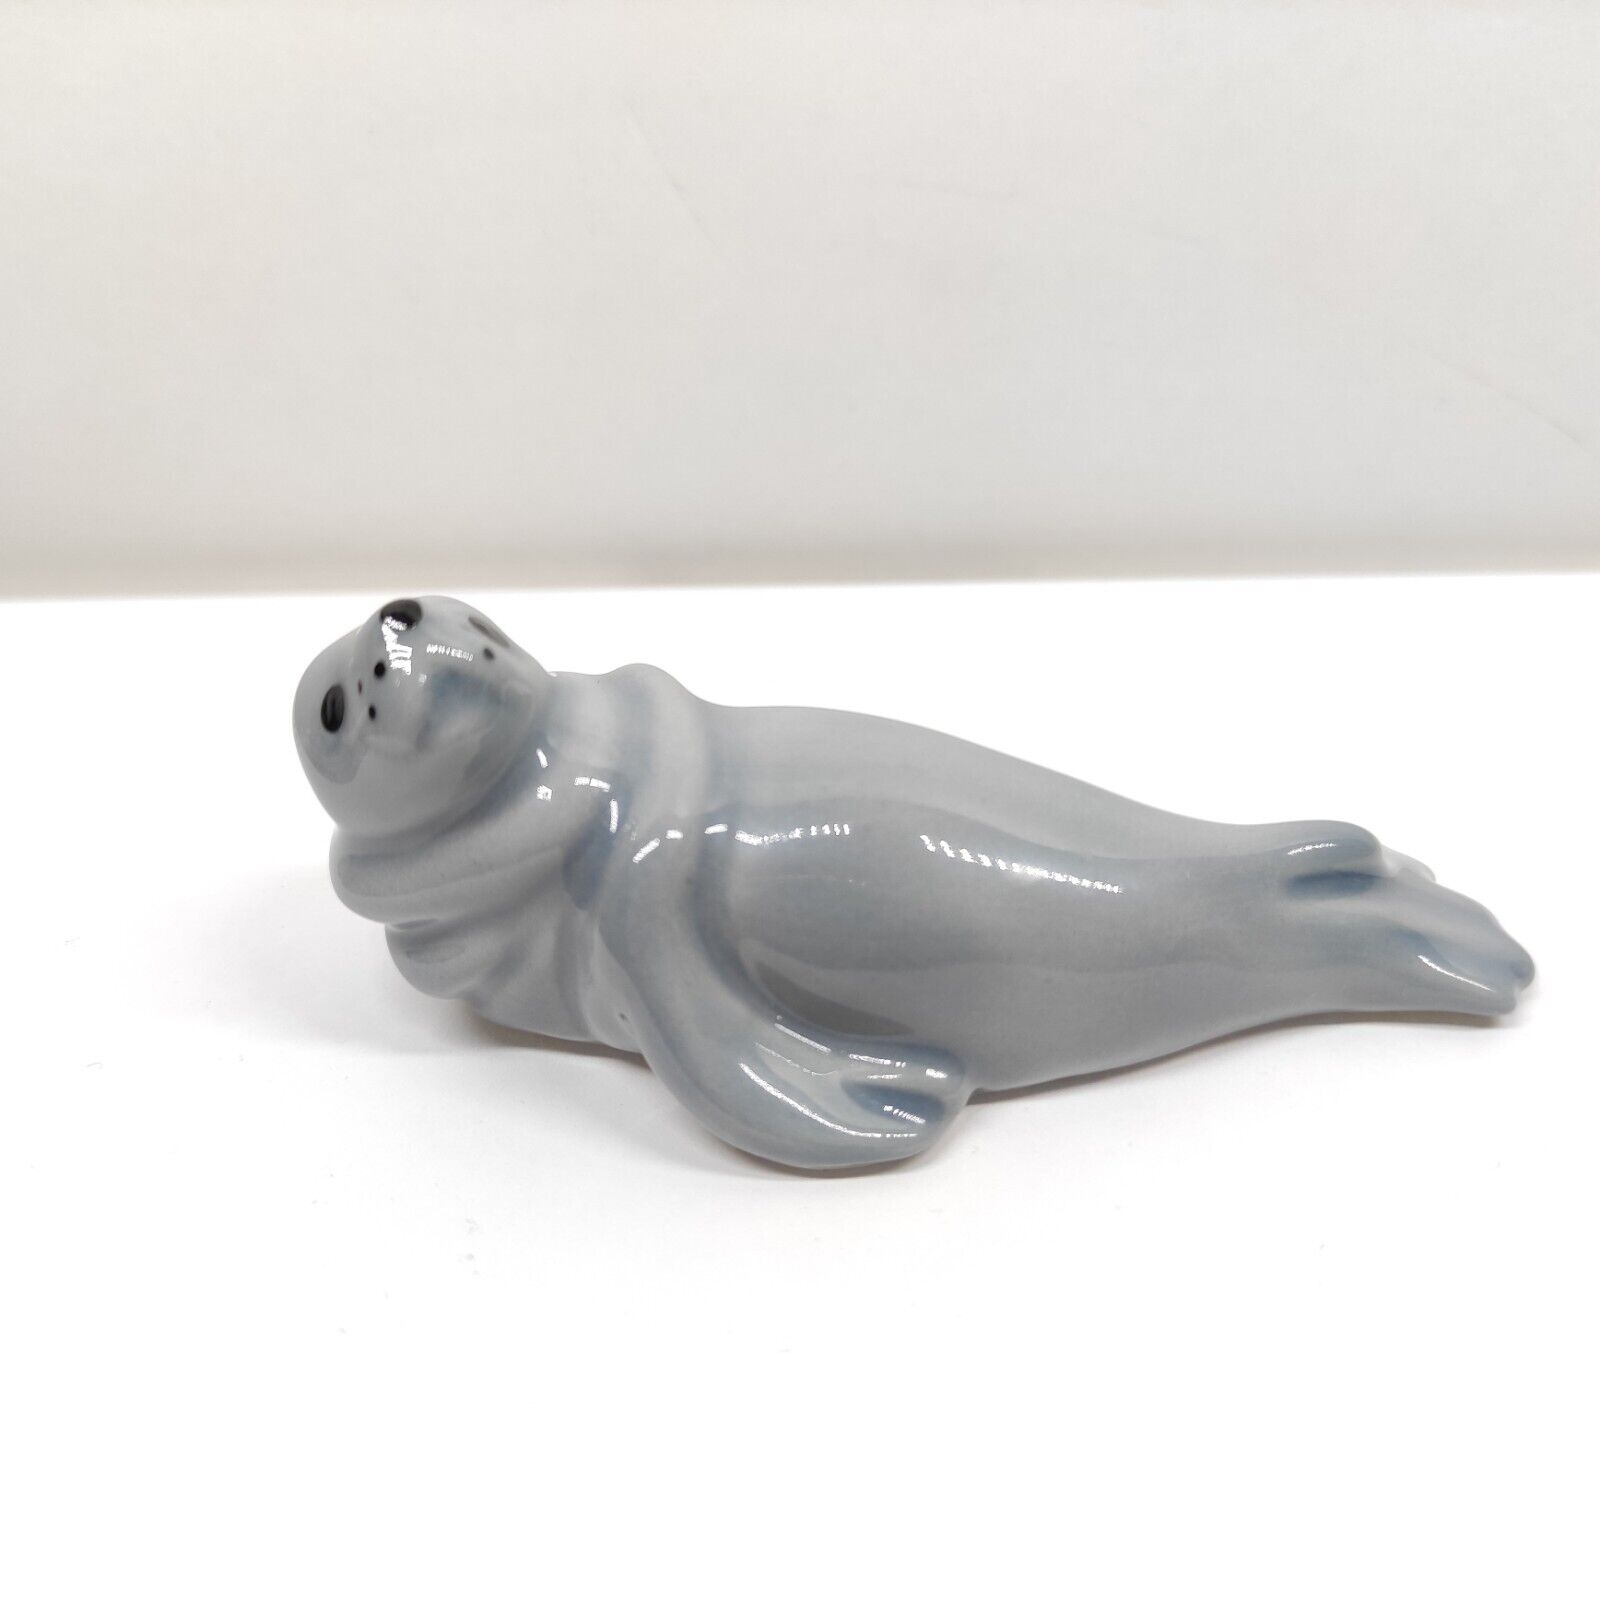 Rare- Wade England Figurine Gray Sea Lion 